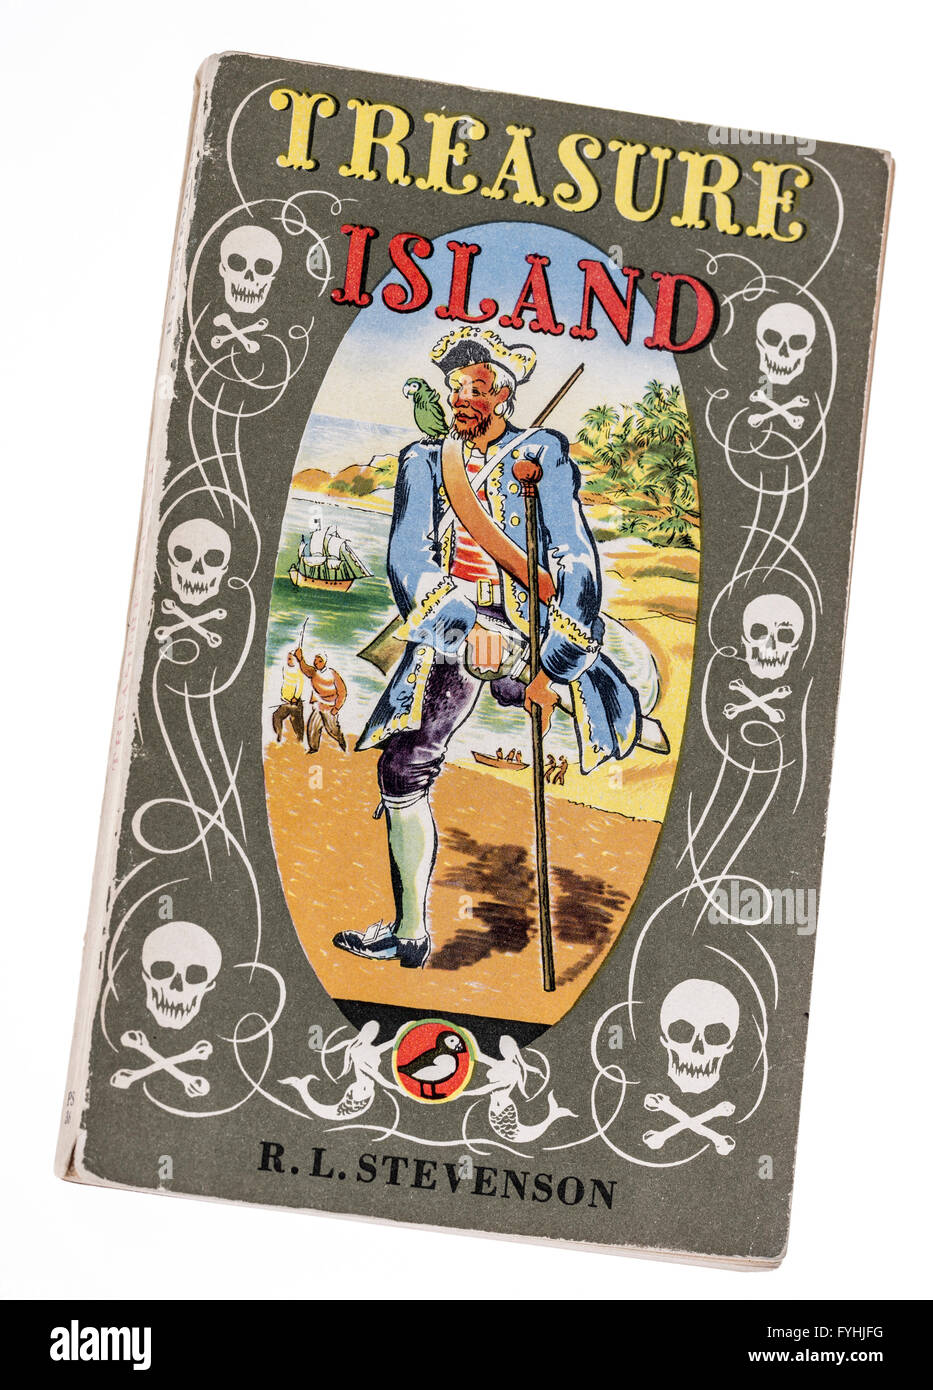 Couverture de livre l'île au trésor de Robert Louis Stevenson publié par Macareux moine Banque D'Images